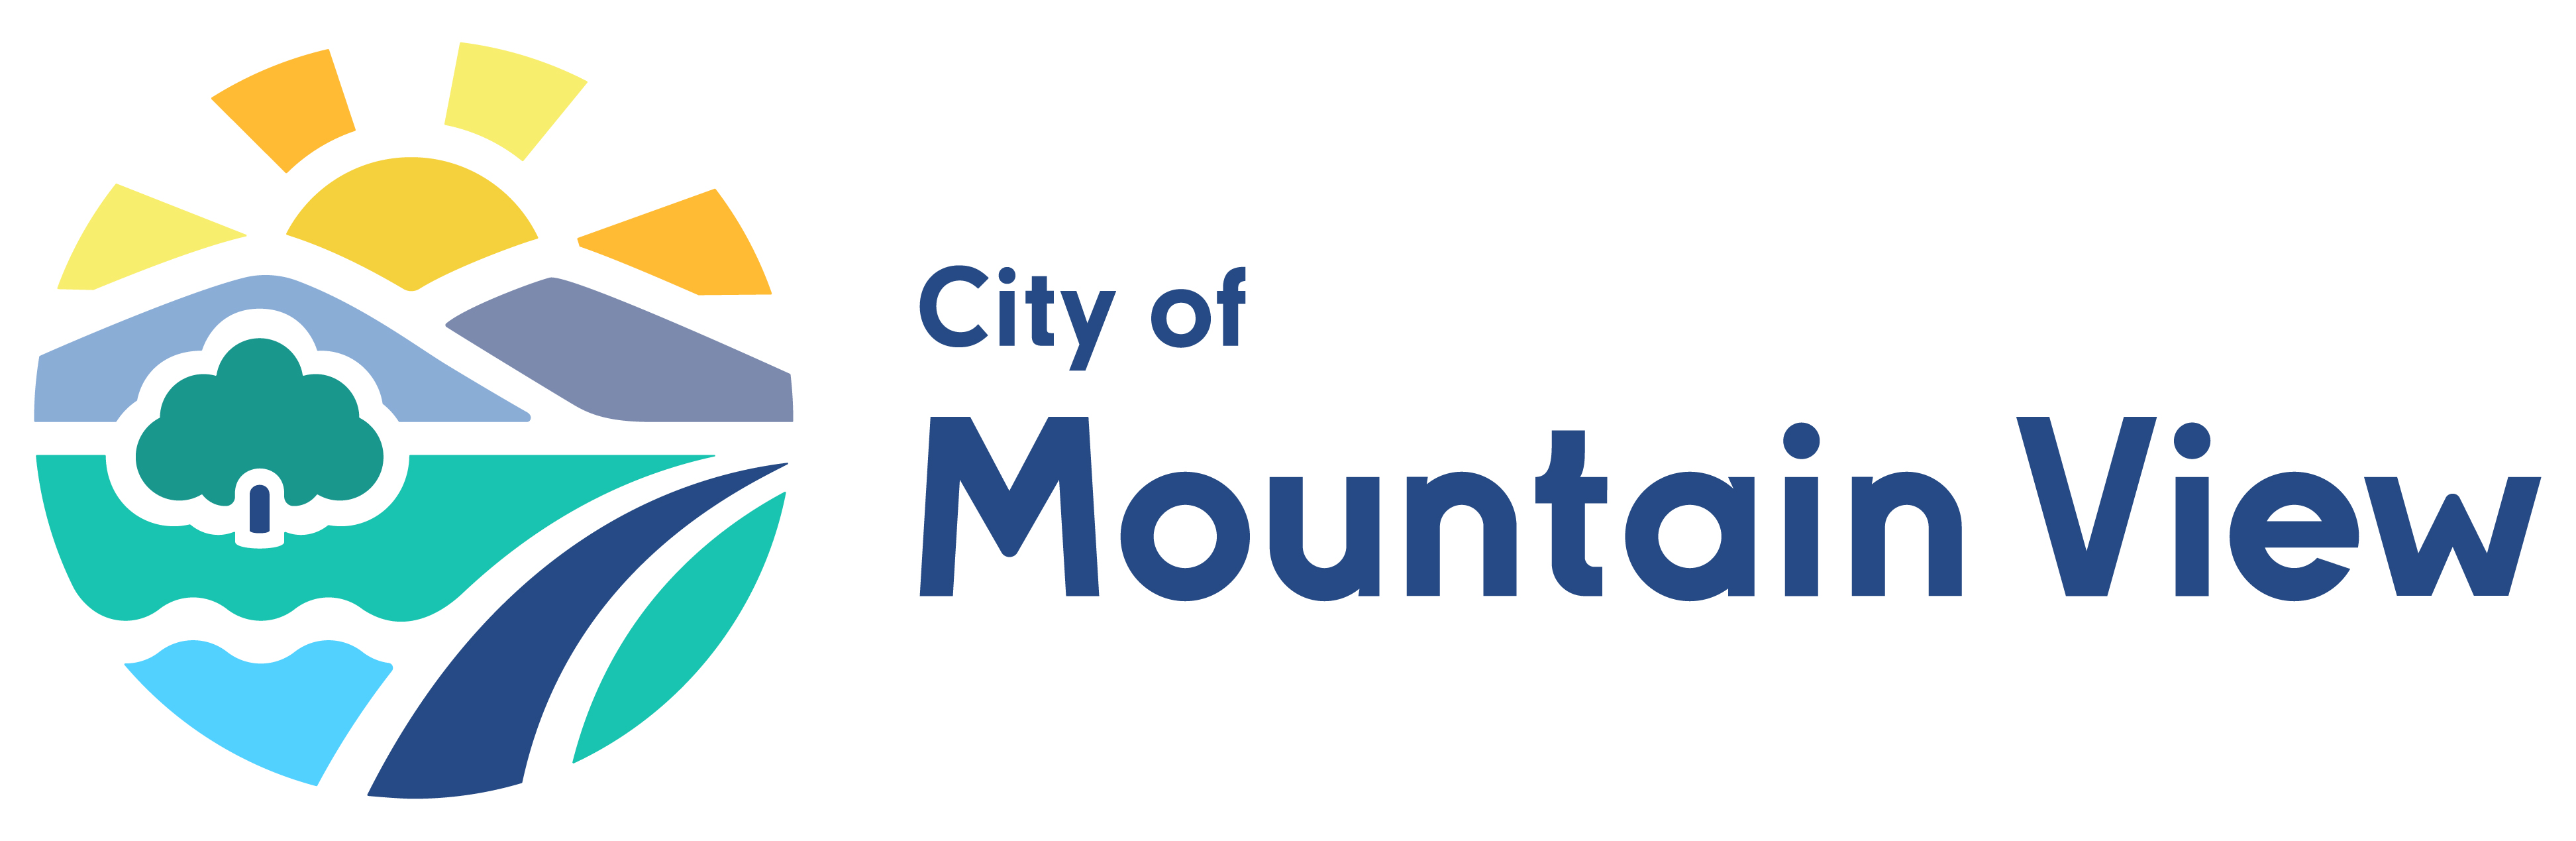 City of Mountain View logo